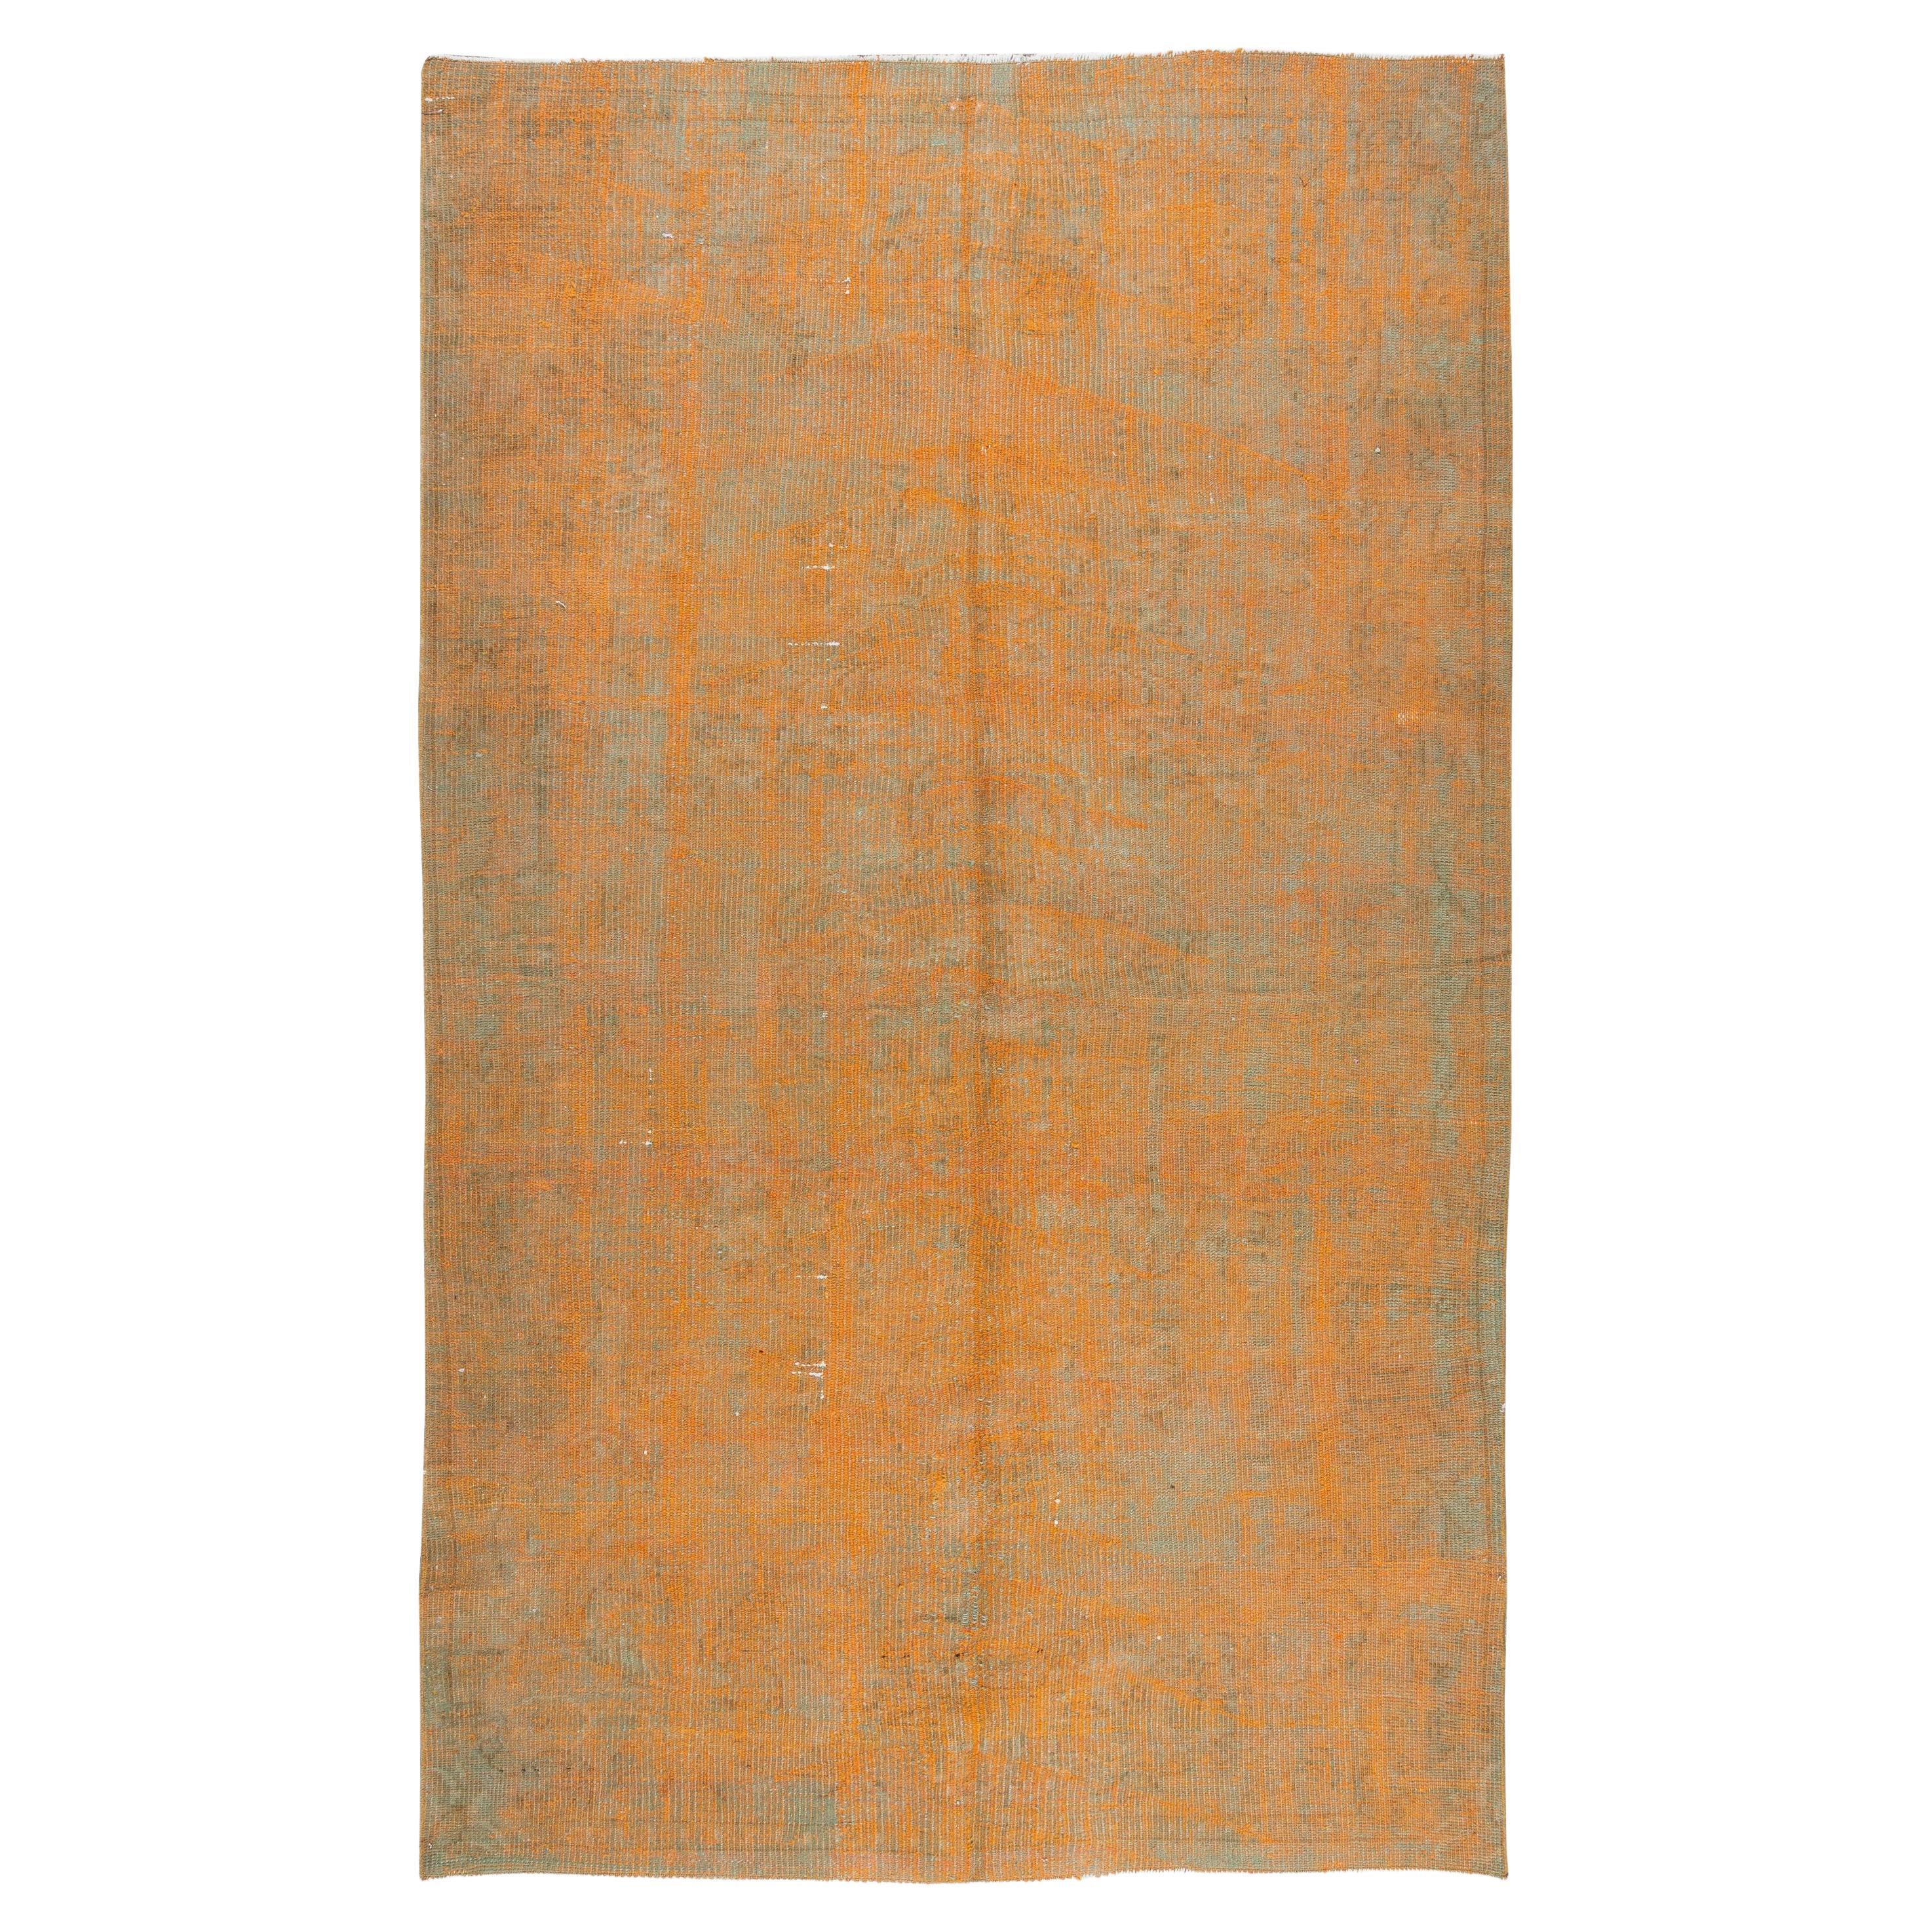 Türkischer Vintage-Teppich in gebranntem Orange, 5x8.7 Ft. Circa 1960. Handgefertigter Wollteppich